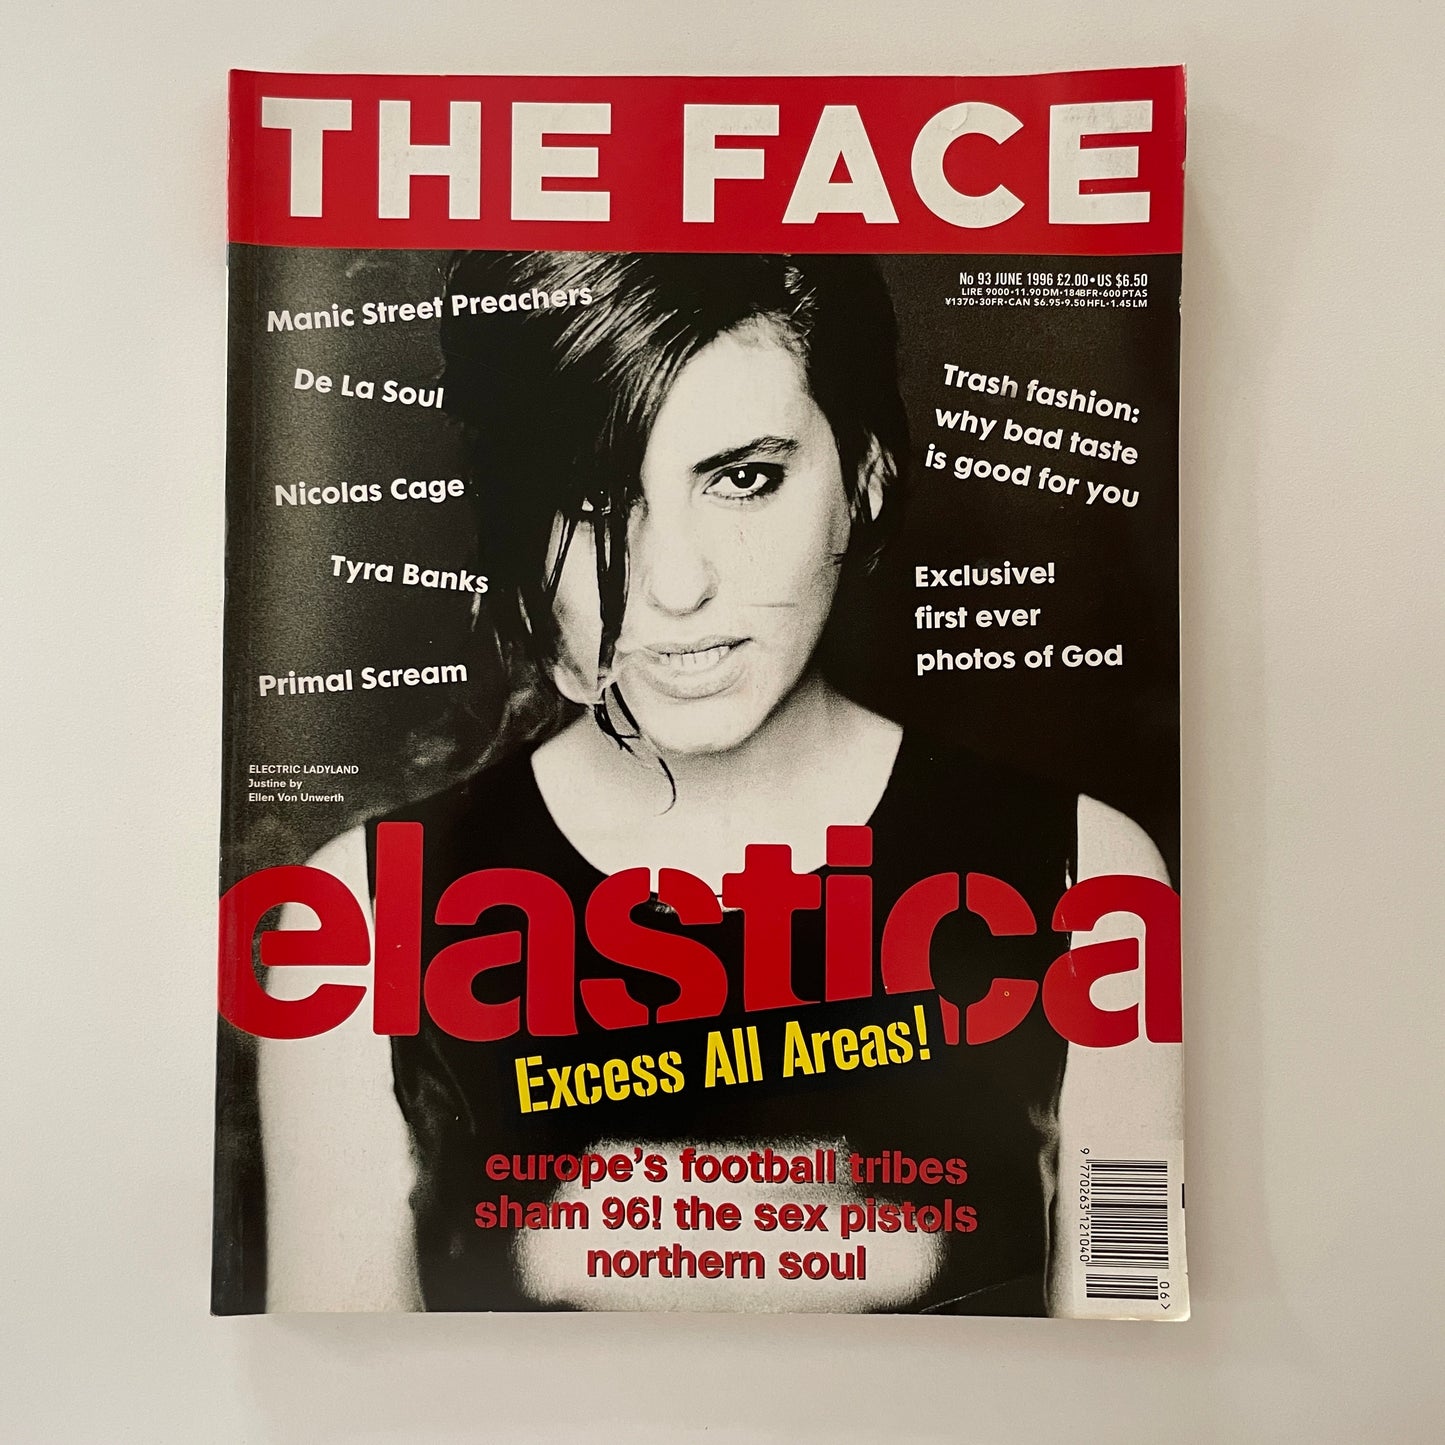 The Face No.93 - June 1996 - Elastica